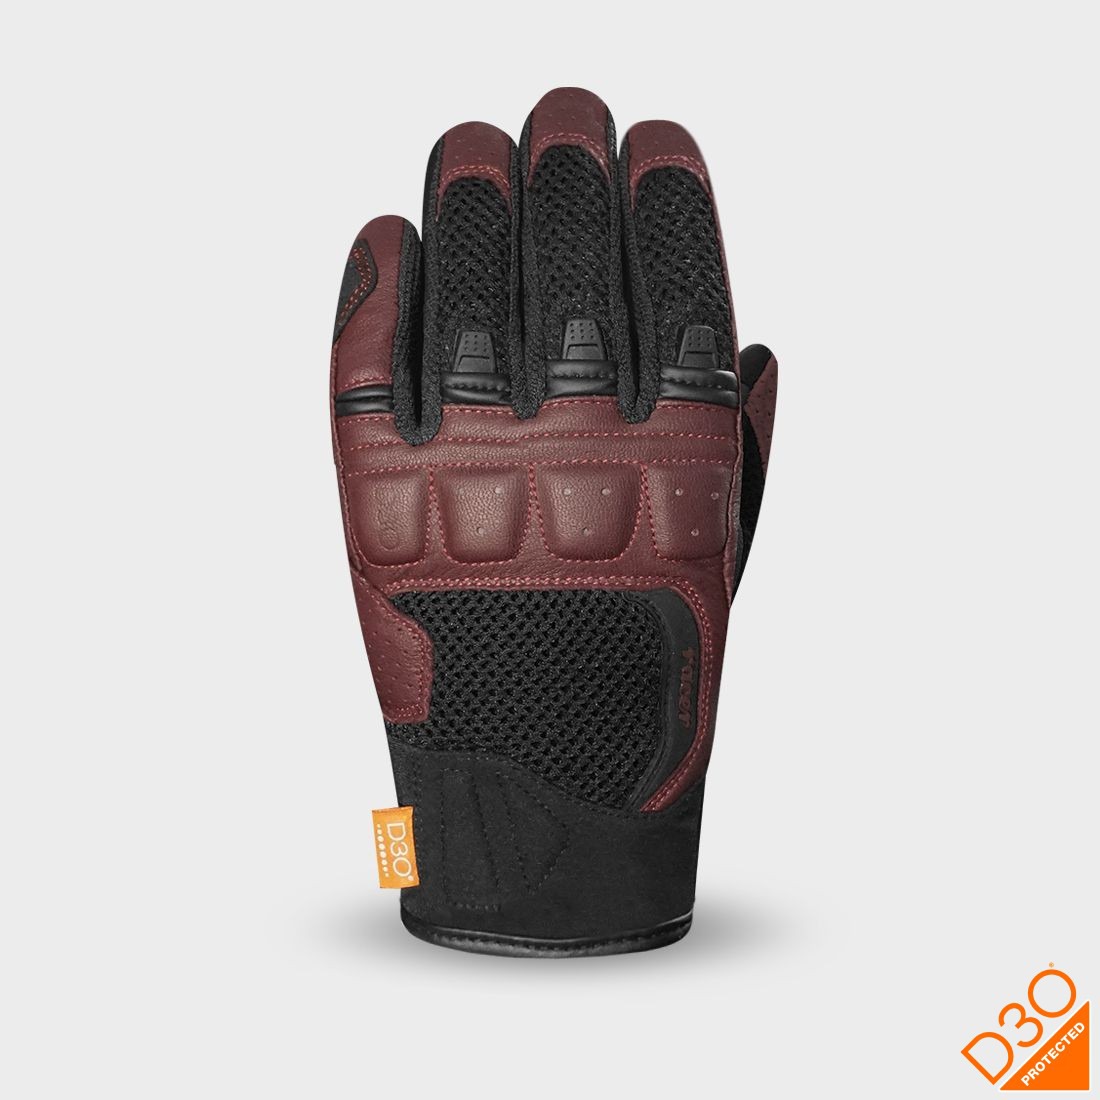 gloves RONIN, RACER, women (black/burgundy)